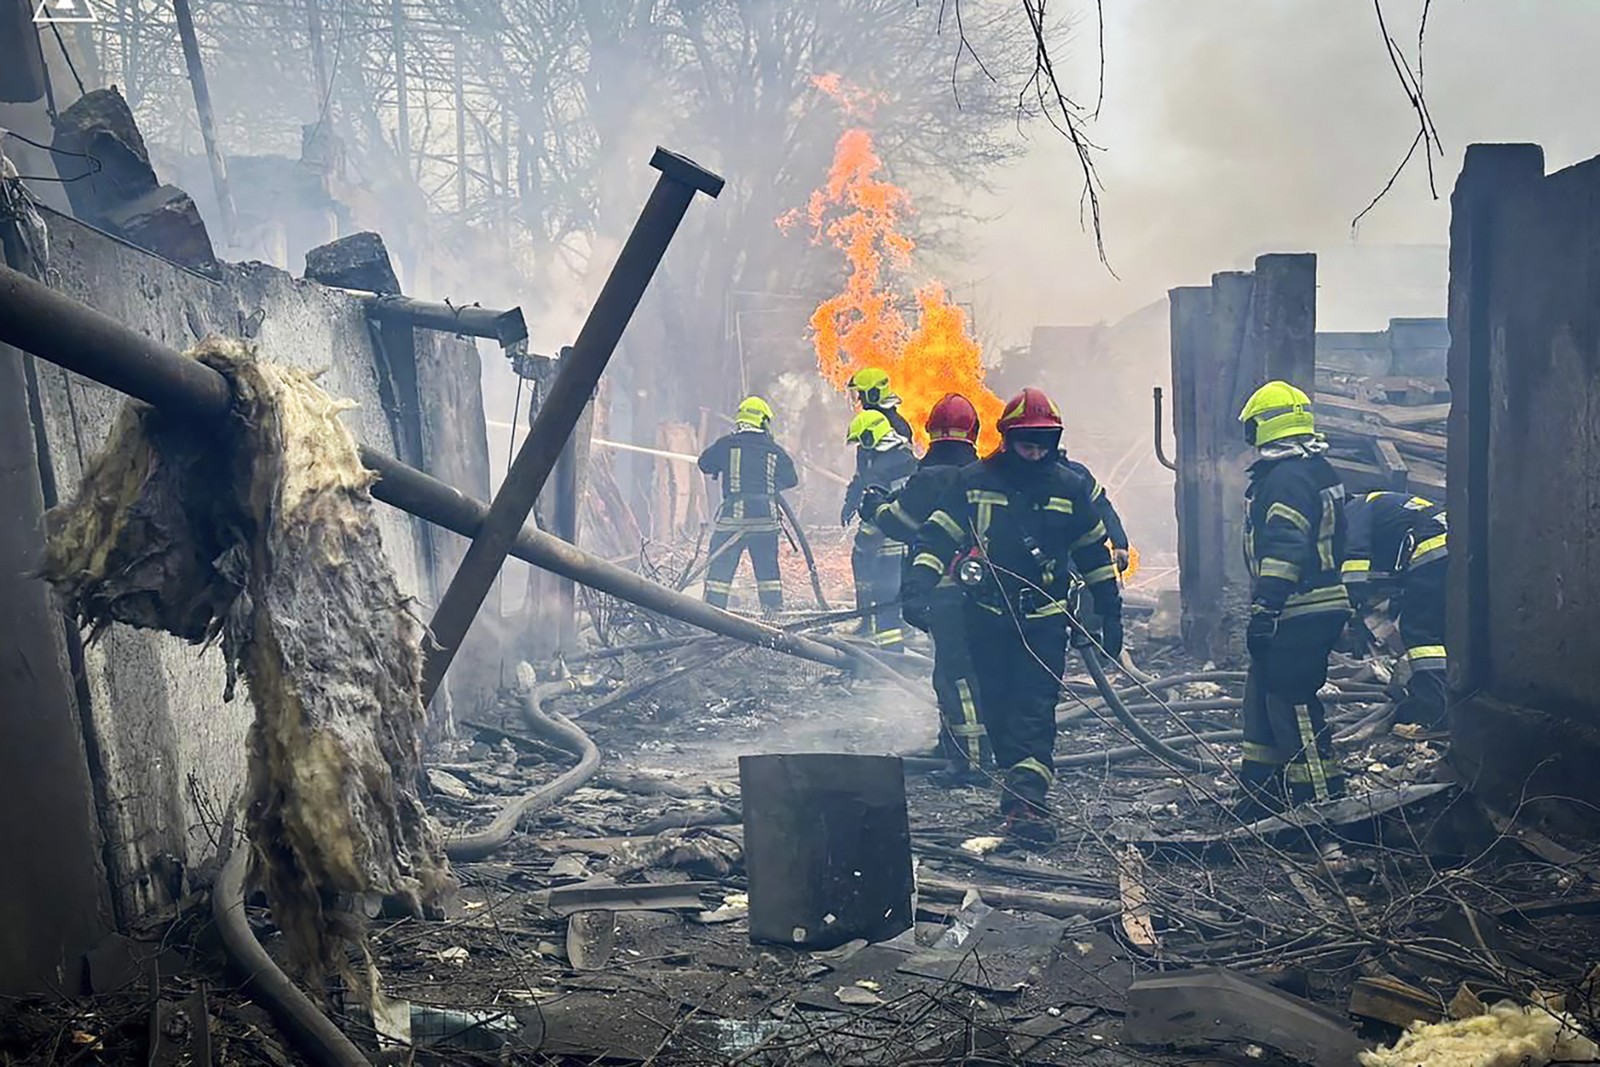 ρωσία: τουλάχιστον 6 νεκροί και 35 τραυματίες από ουκρανική επίθεση στο μπέλγκοροντ